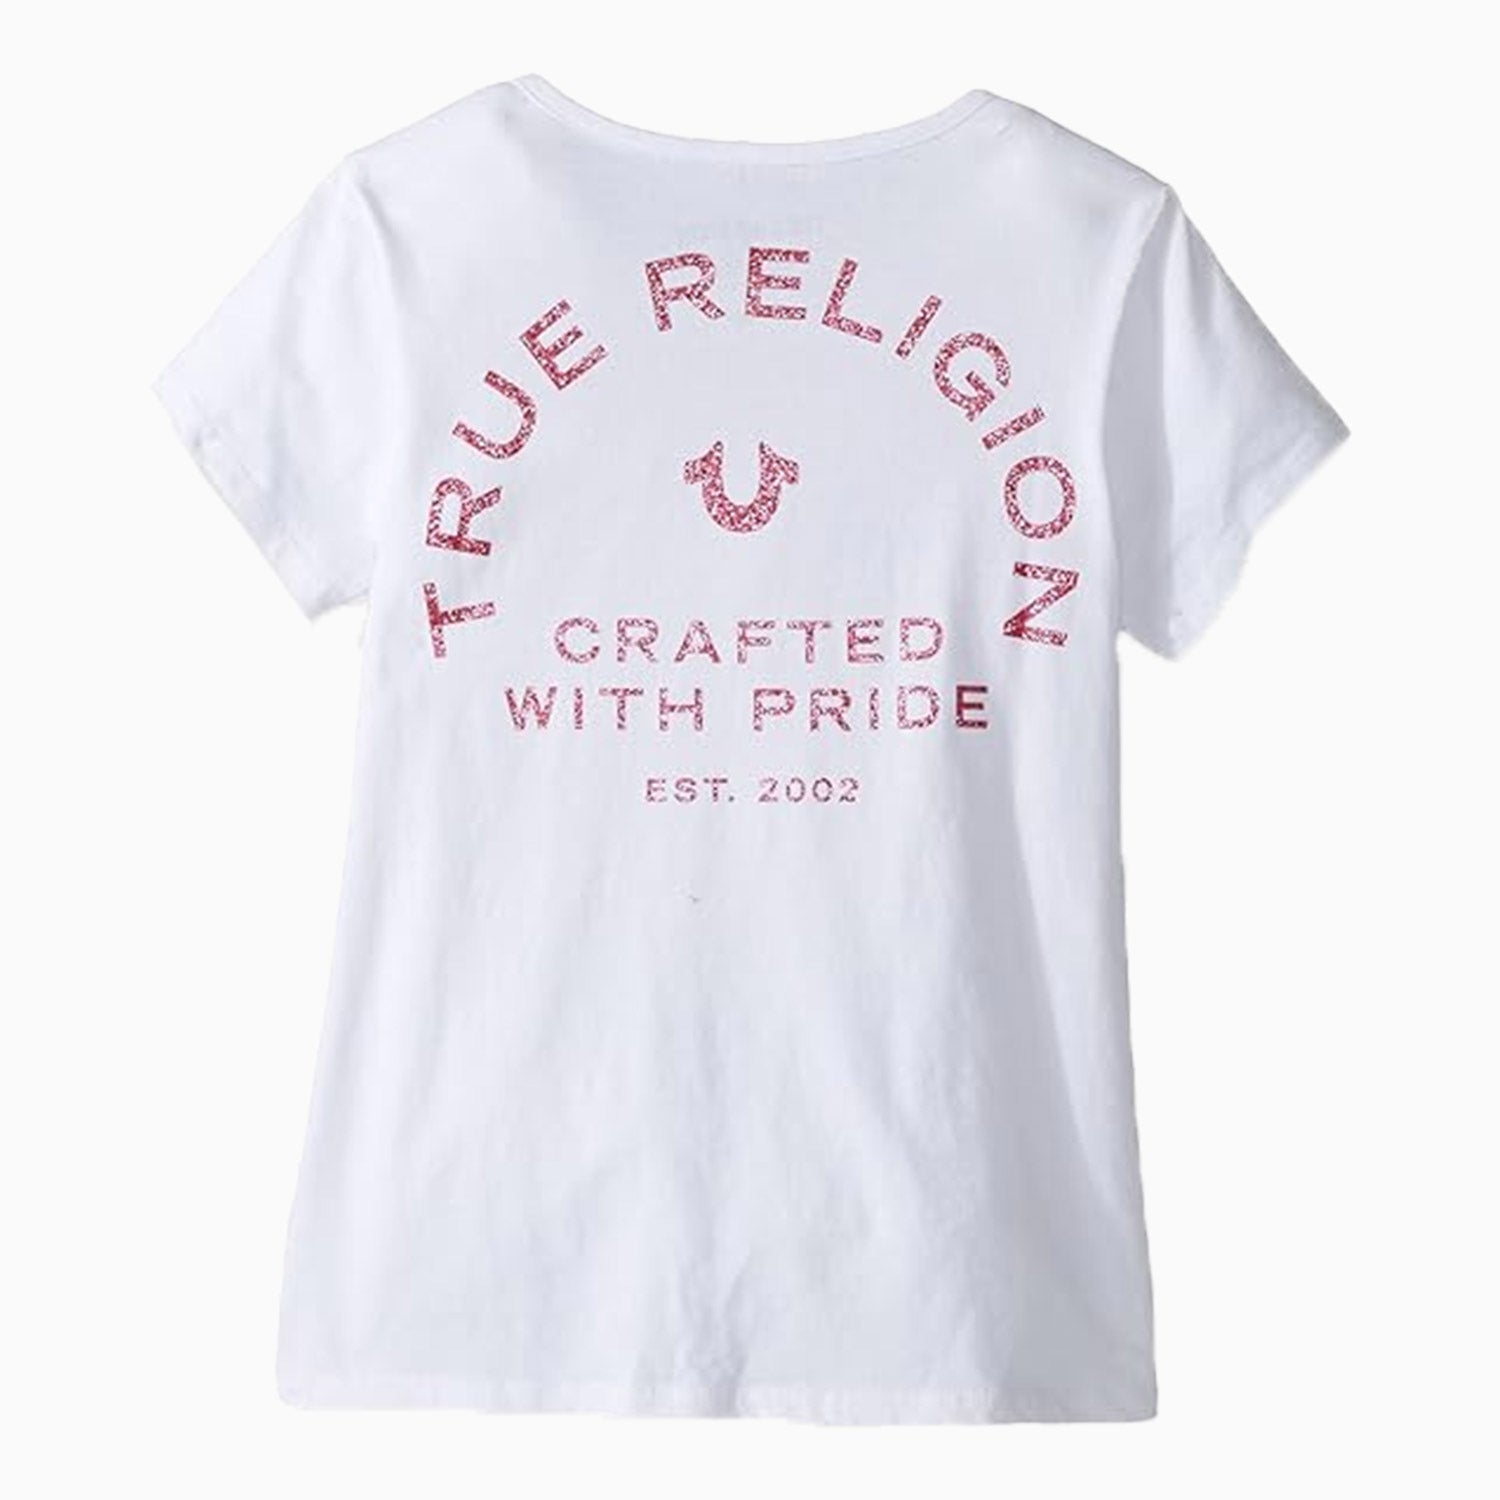 true-religion-kids-core-branded-logo-short-sleeve-t-shirt-tr646te176-white